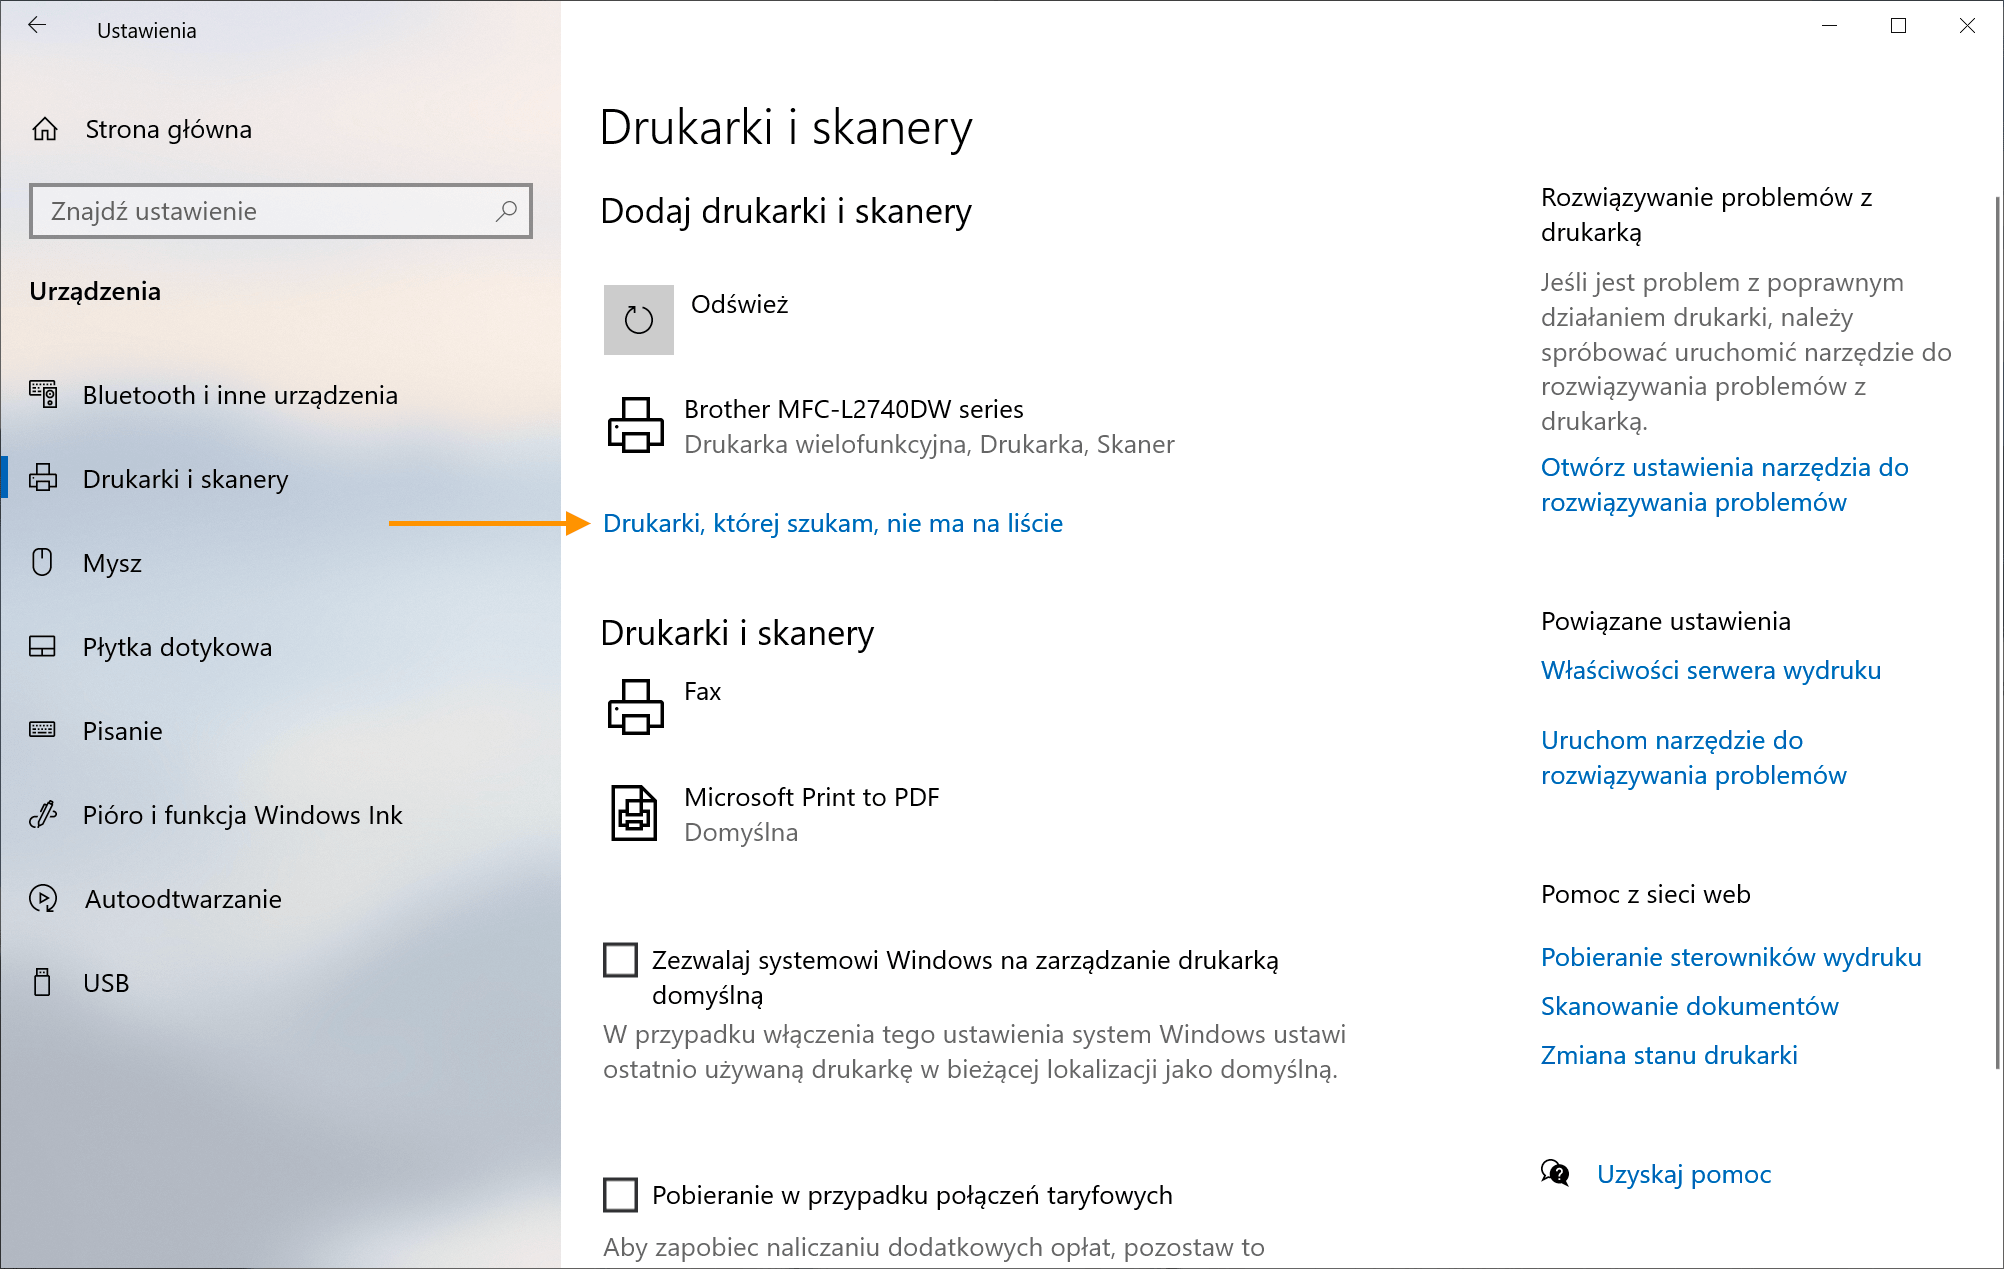 Windows 10 - Drukarki, której szukam, nie ma na liście